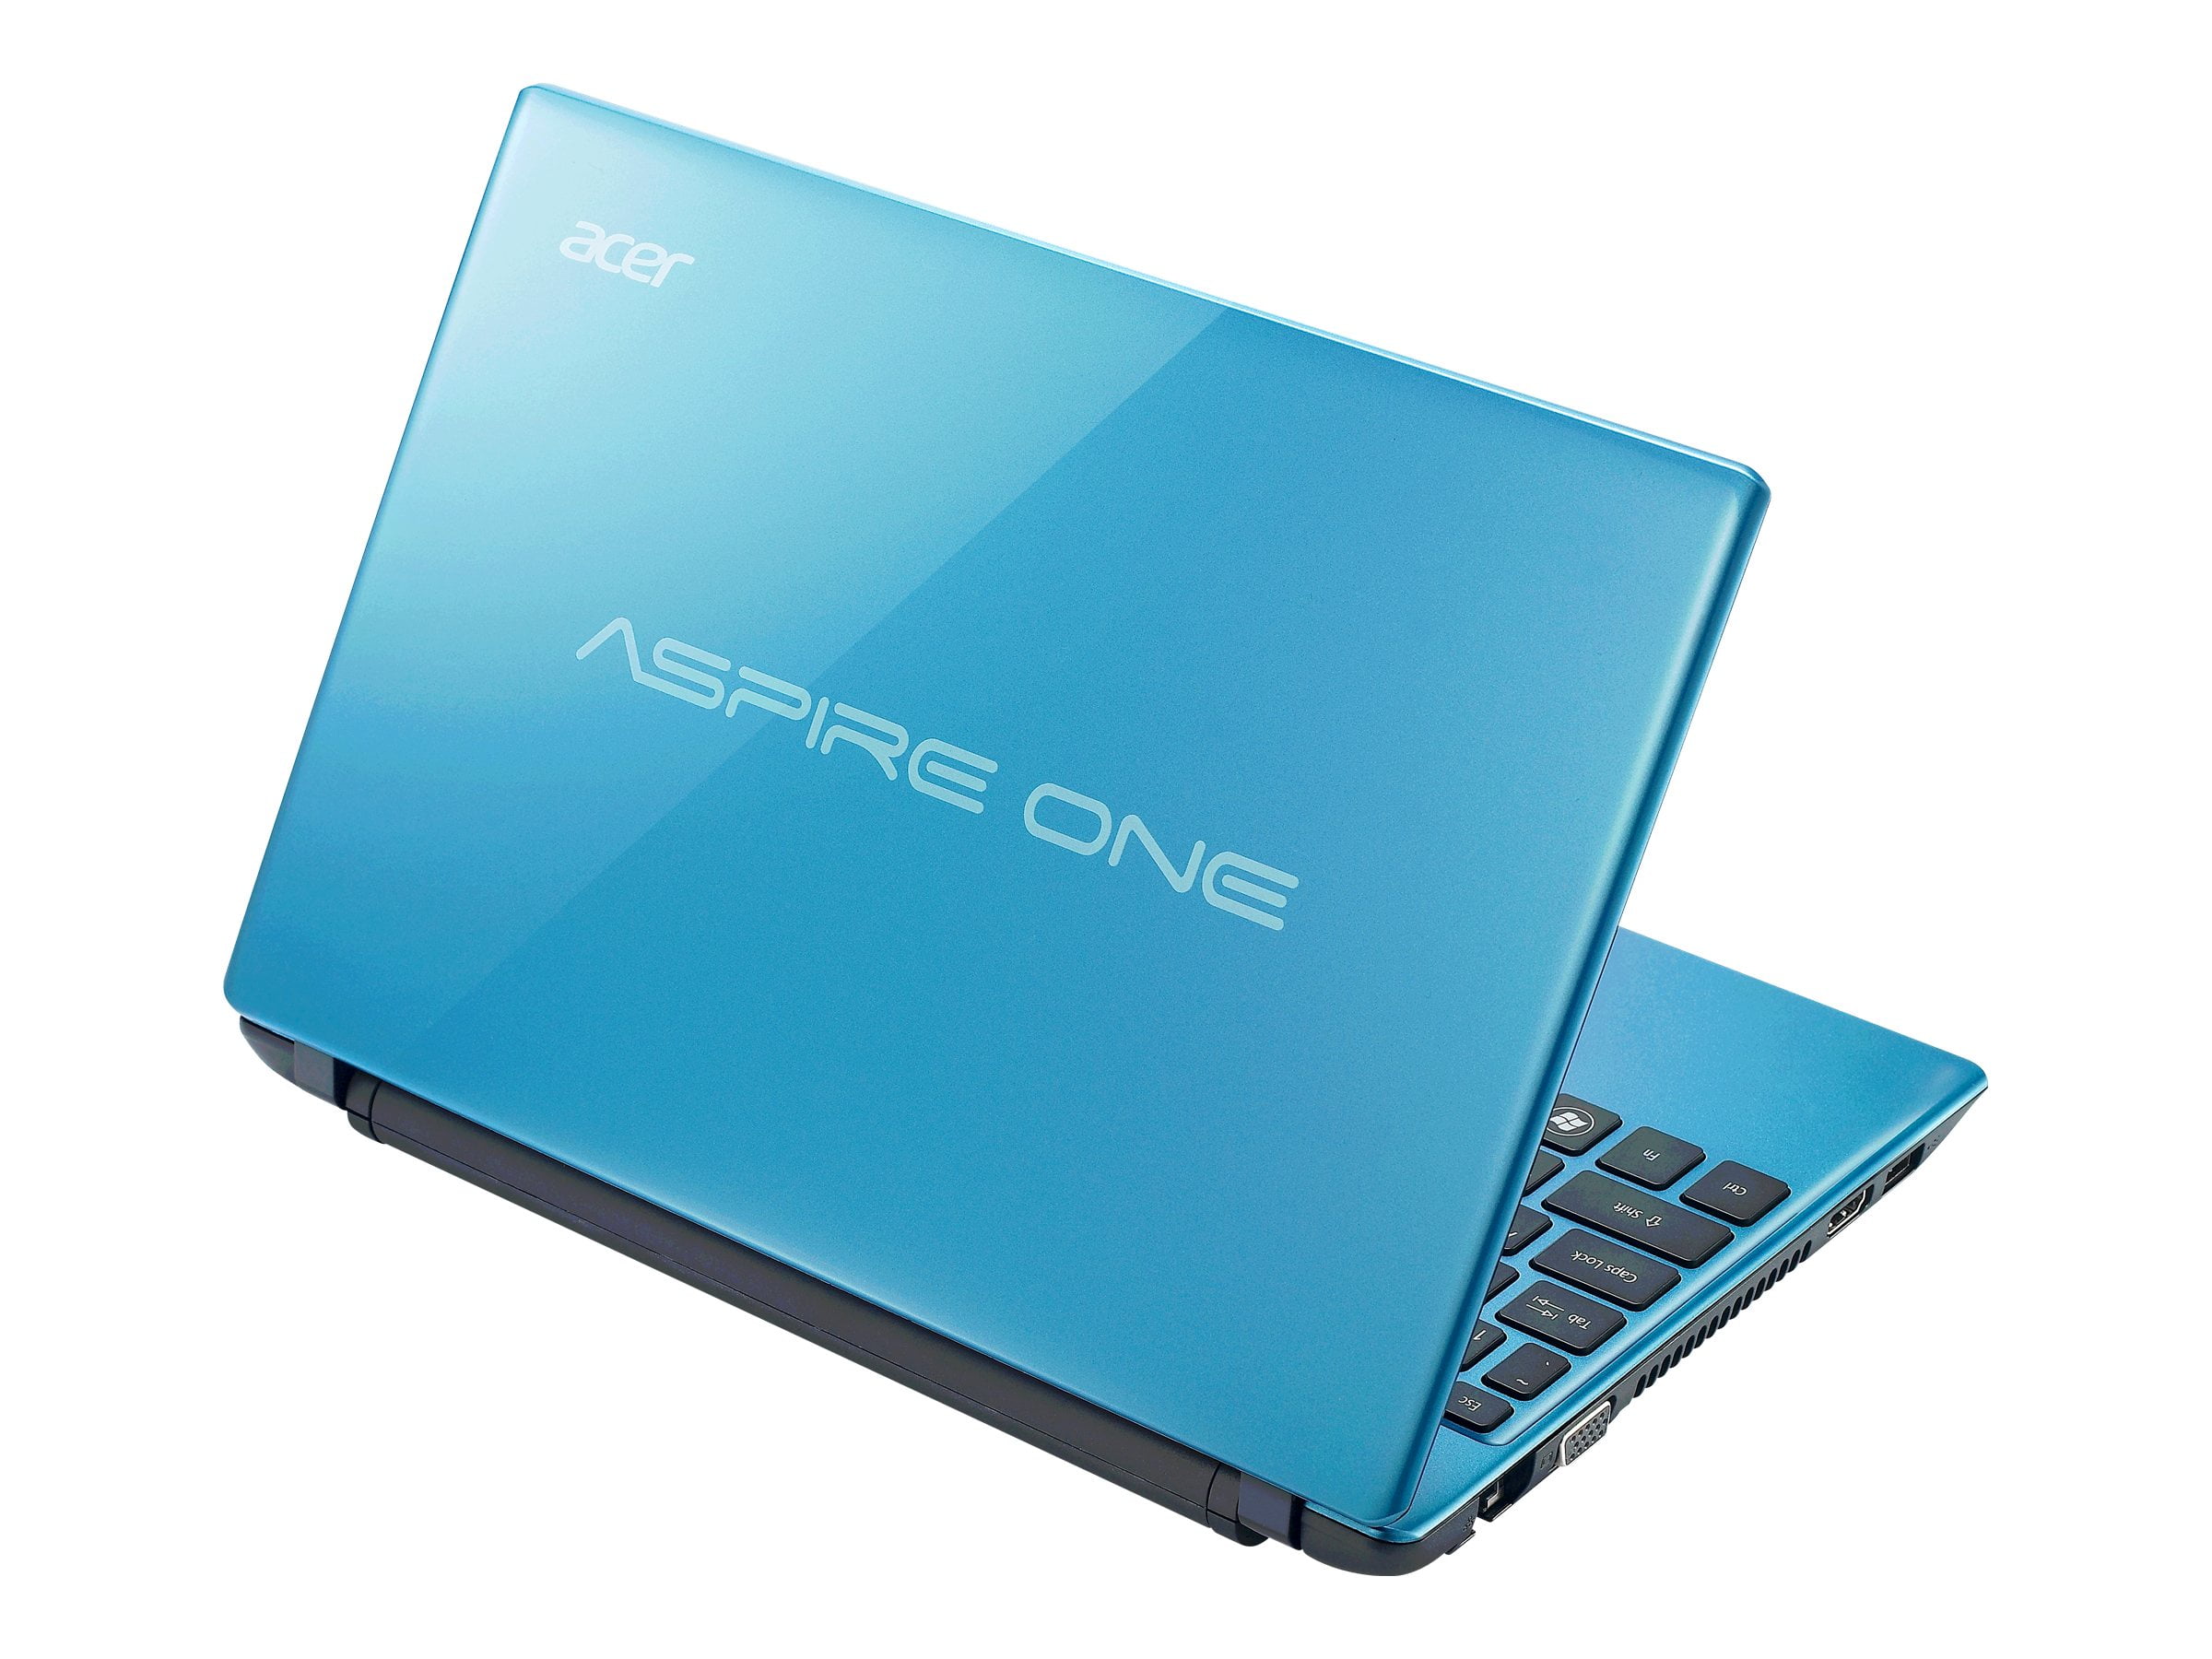 kijken een vuurtje stoken Weglaten Acer Aspire ONE 756-2868 - Intel Celeron 877 / 1.4 GHz - Win 7 Home Premium  64-bit - HD Graphics - 4 GB RAM - 320 GB HDD - 11.6" CineCrystal 1366 x 768  (HD) - feather blue - Walmart.com